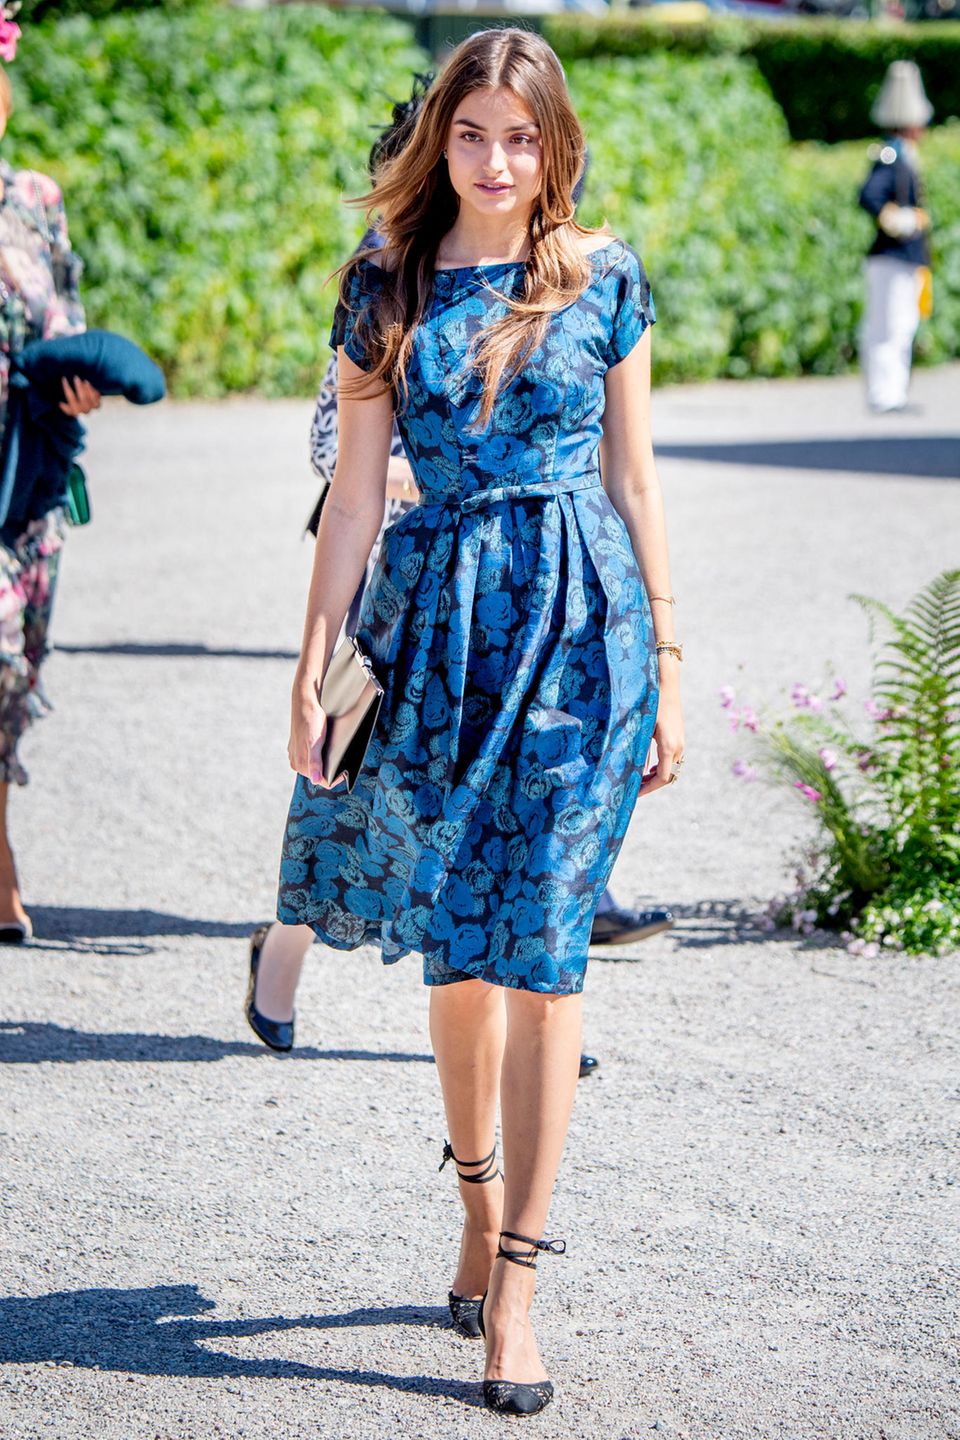 Milana Gräfin von Abensperg, die schöne Nichte von Chris O'Neill, zieht im blauen Blumenkleid die Blicke der Fotografen und Taufgäste auf sich.